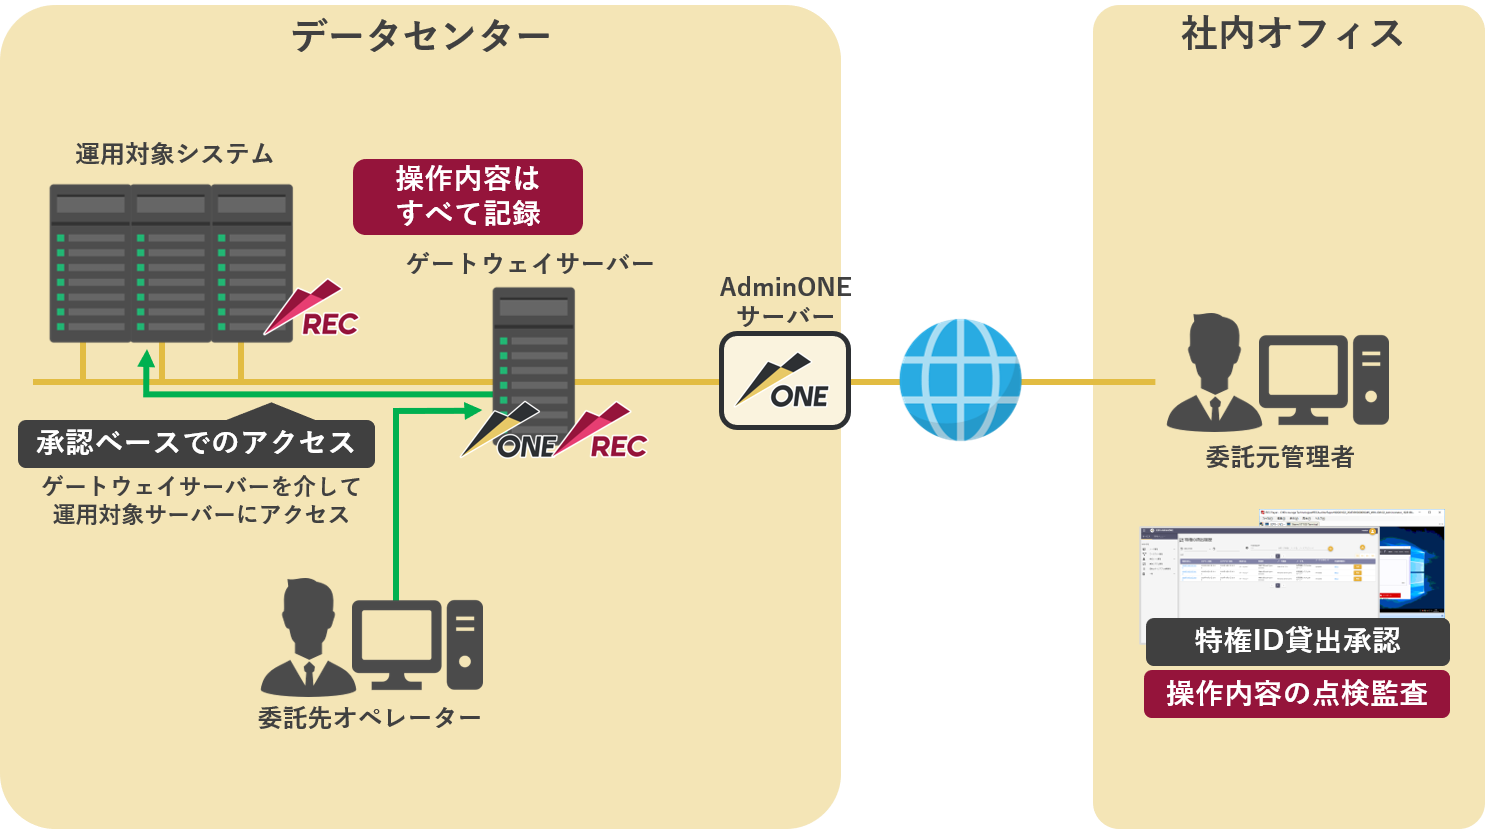 企業のシステムをデータセンターでホスティングし、運用を受託するデータセンター事業者におけるAdminONE活用例